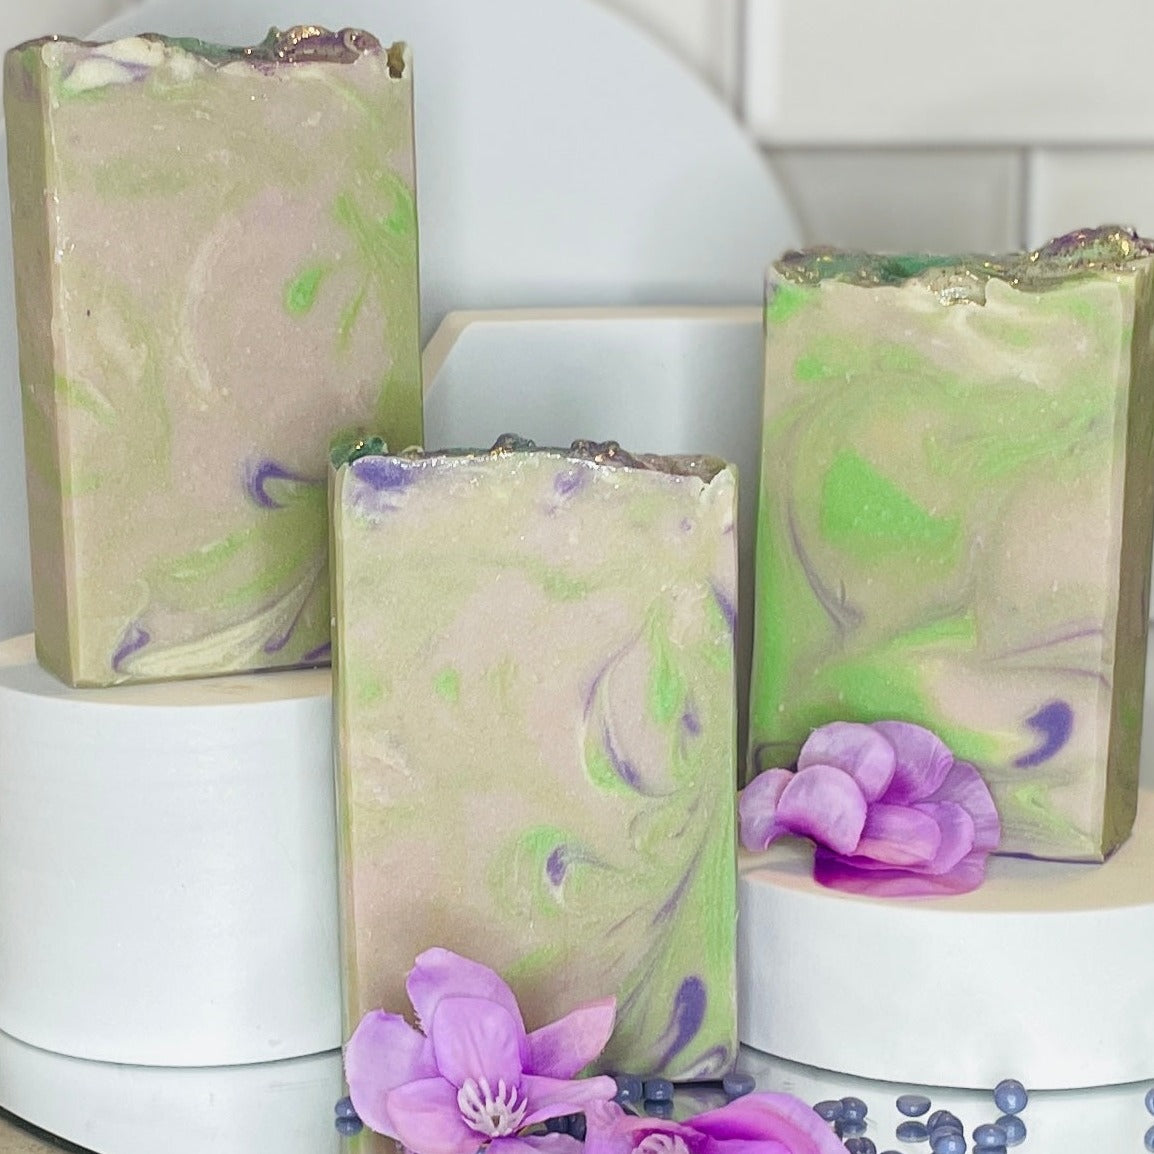 Mom's Lilac Blossom Cold Process Handmade Soap Bar